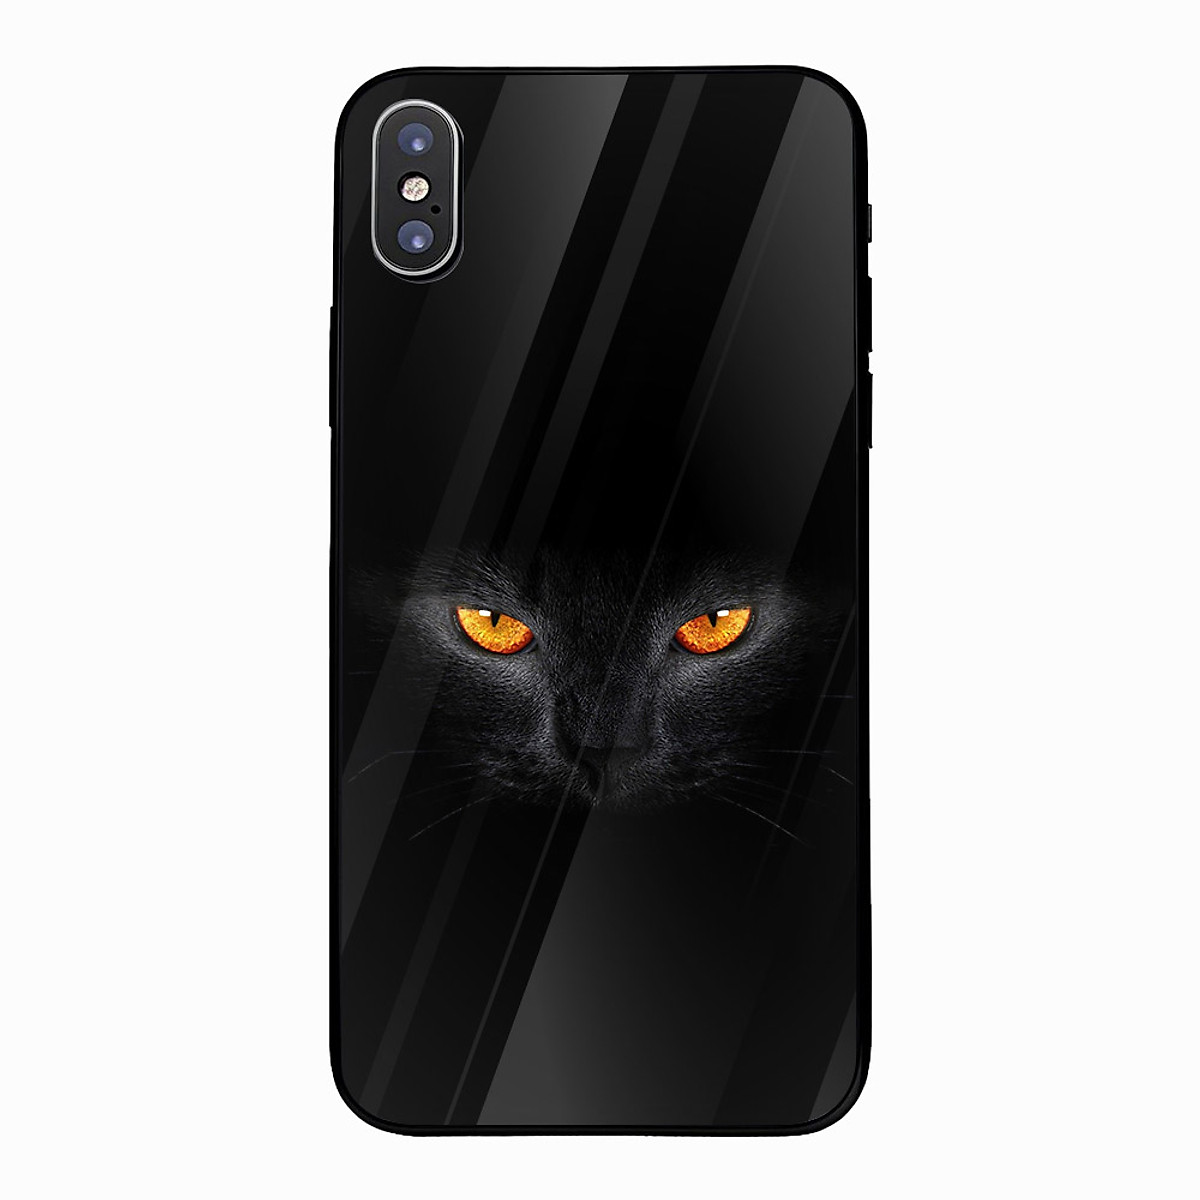 Ốp kính cường lực cho điện thoại iPhone X - Mắt mèo đen MS ADATU011